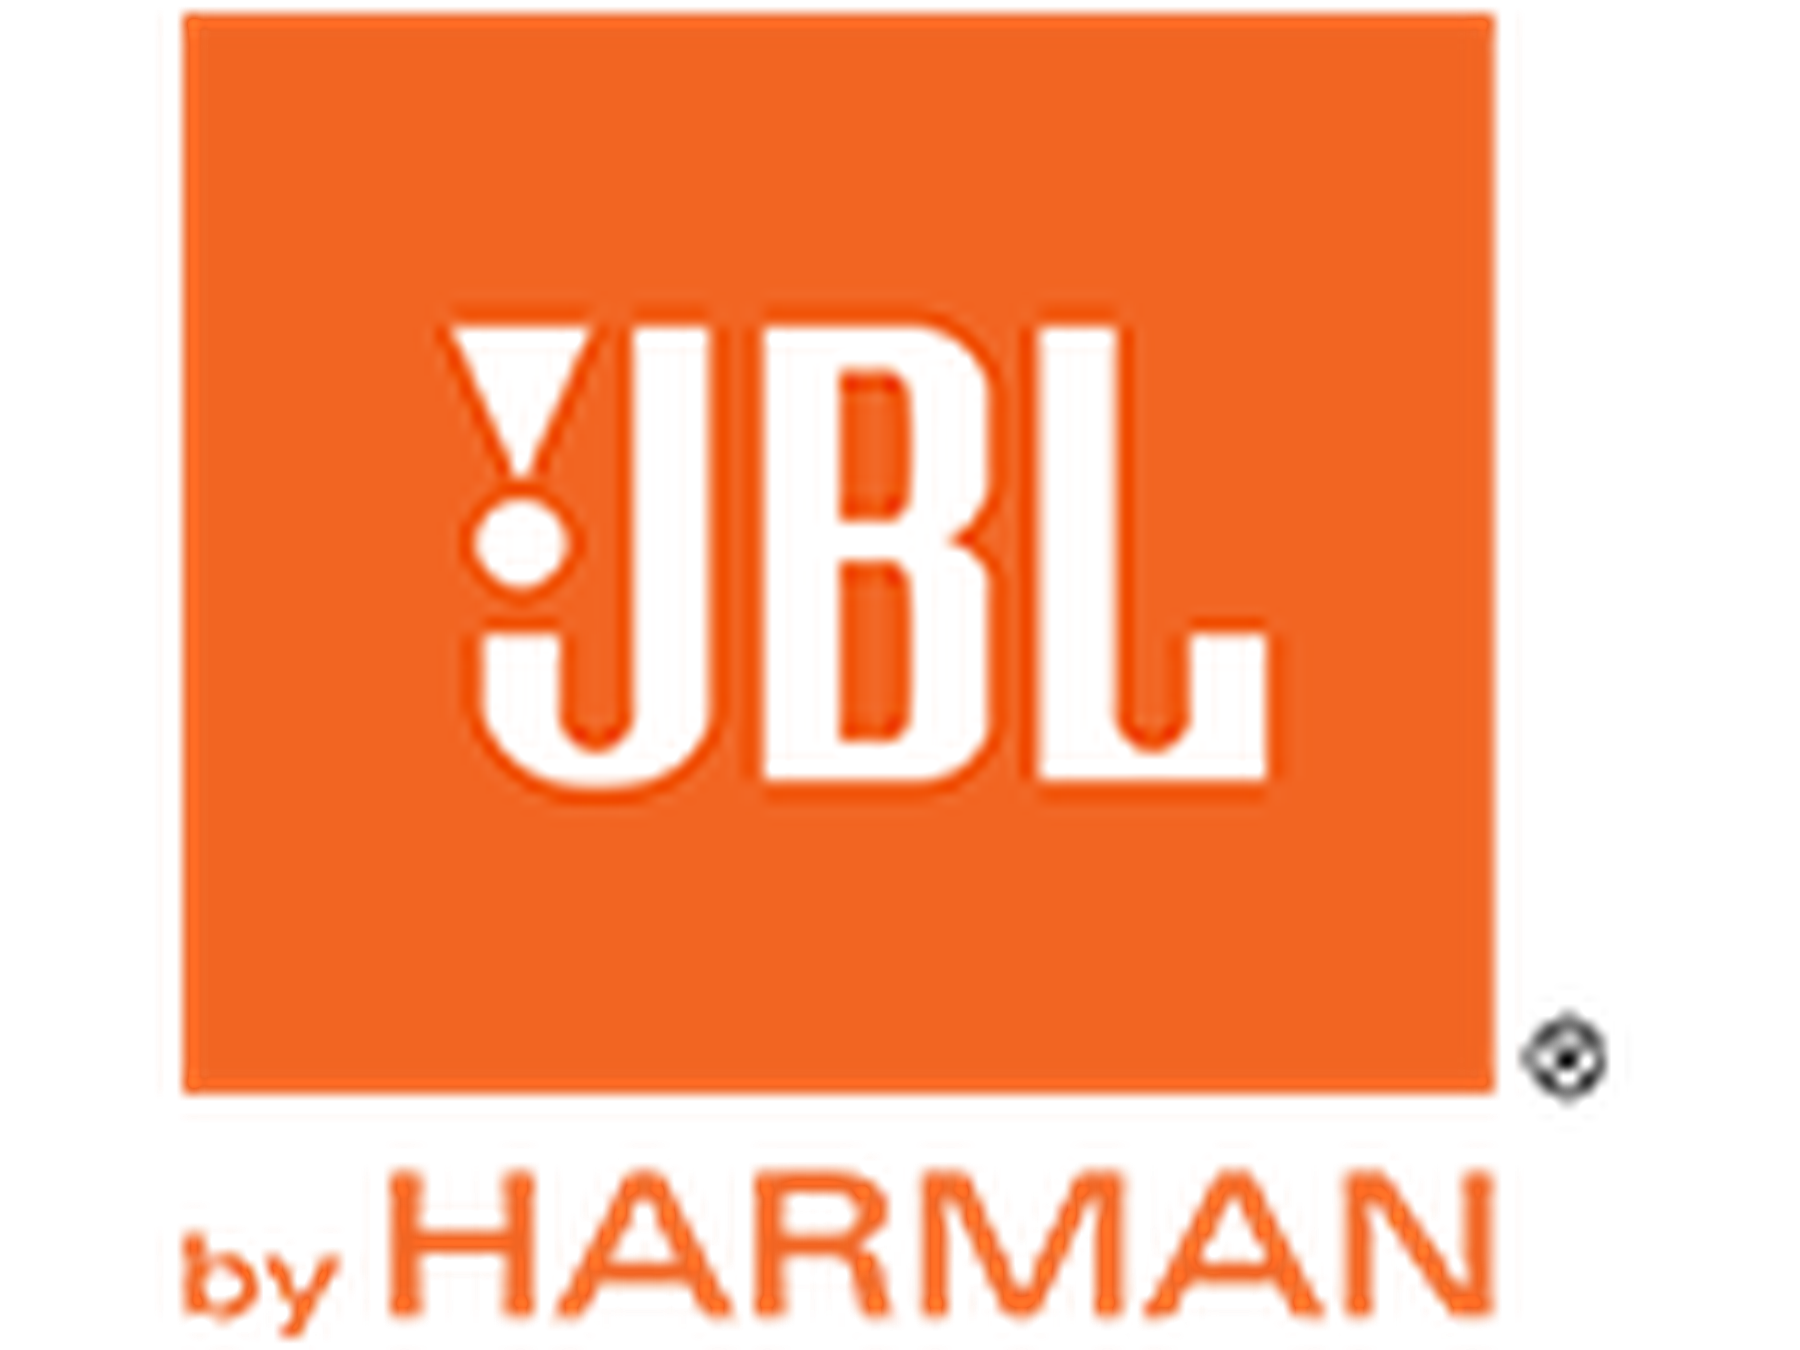 JBL kortingscode